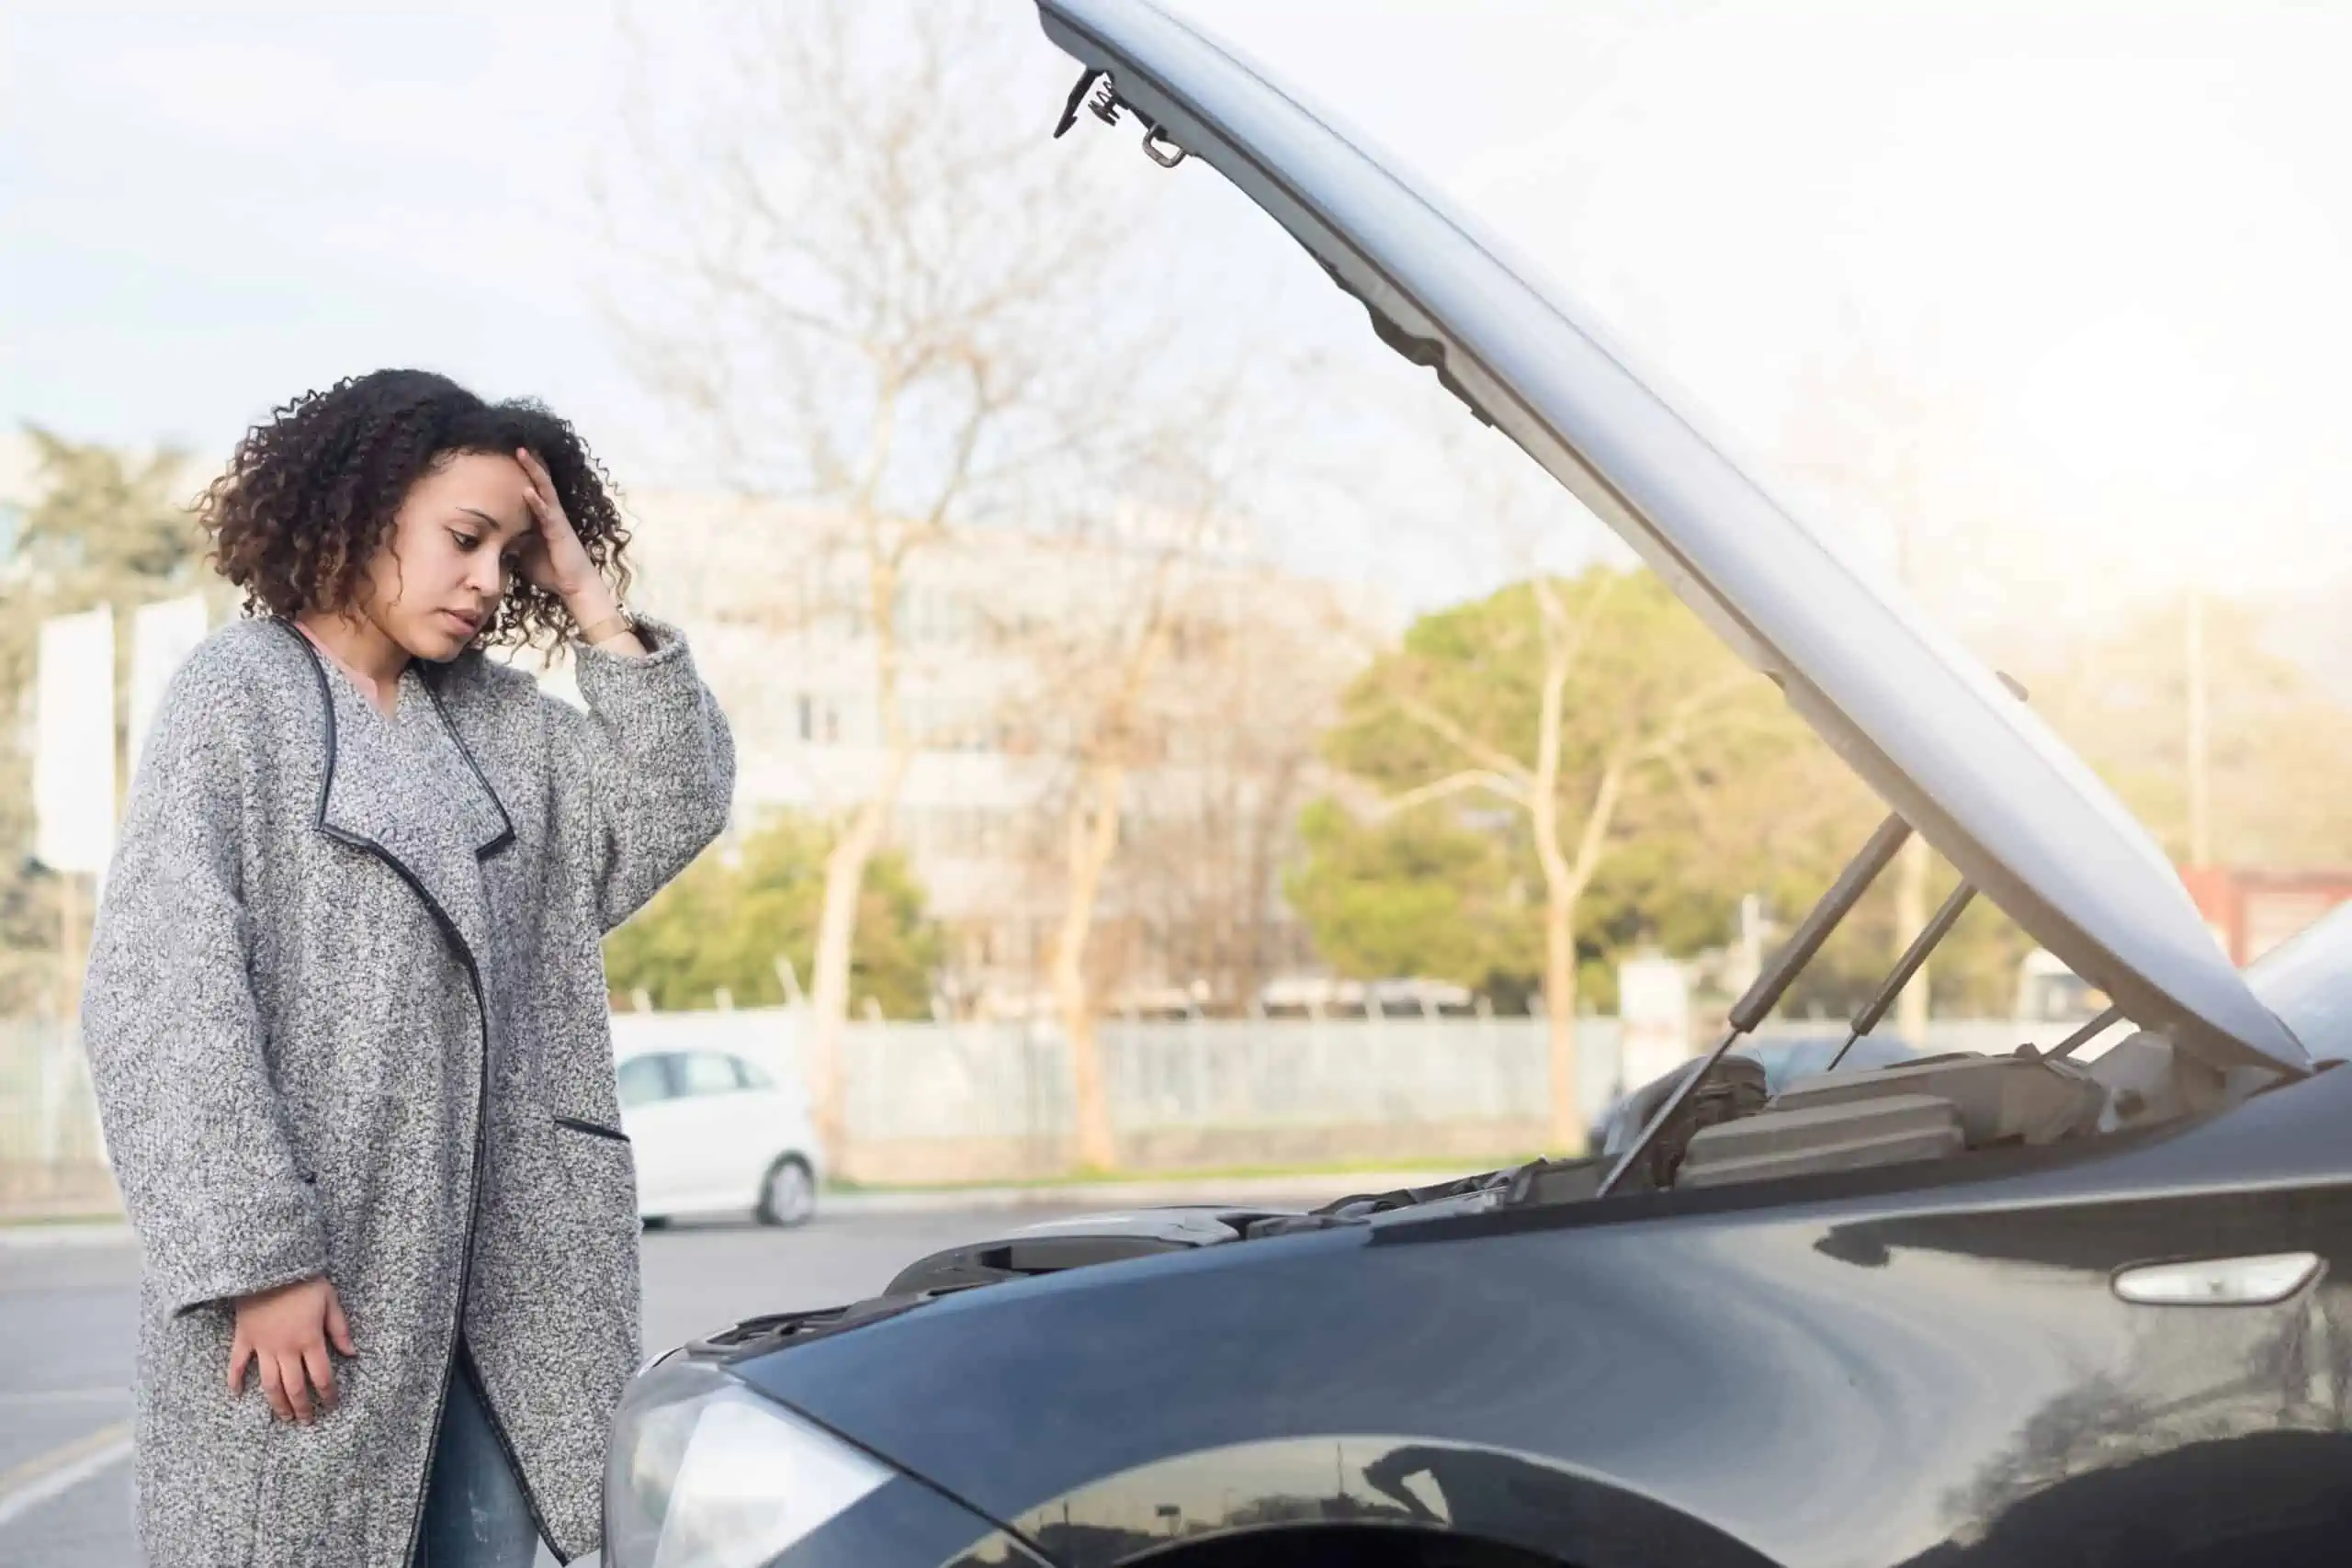 Black woman with curly hair, wearing grey overcoat looking in despair at car in need of repair